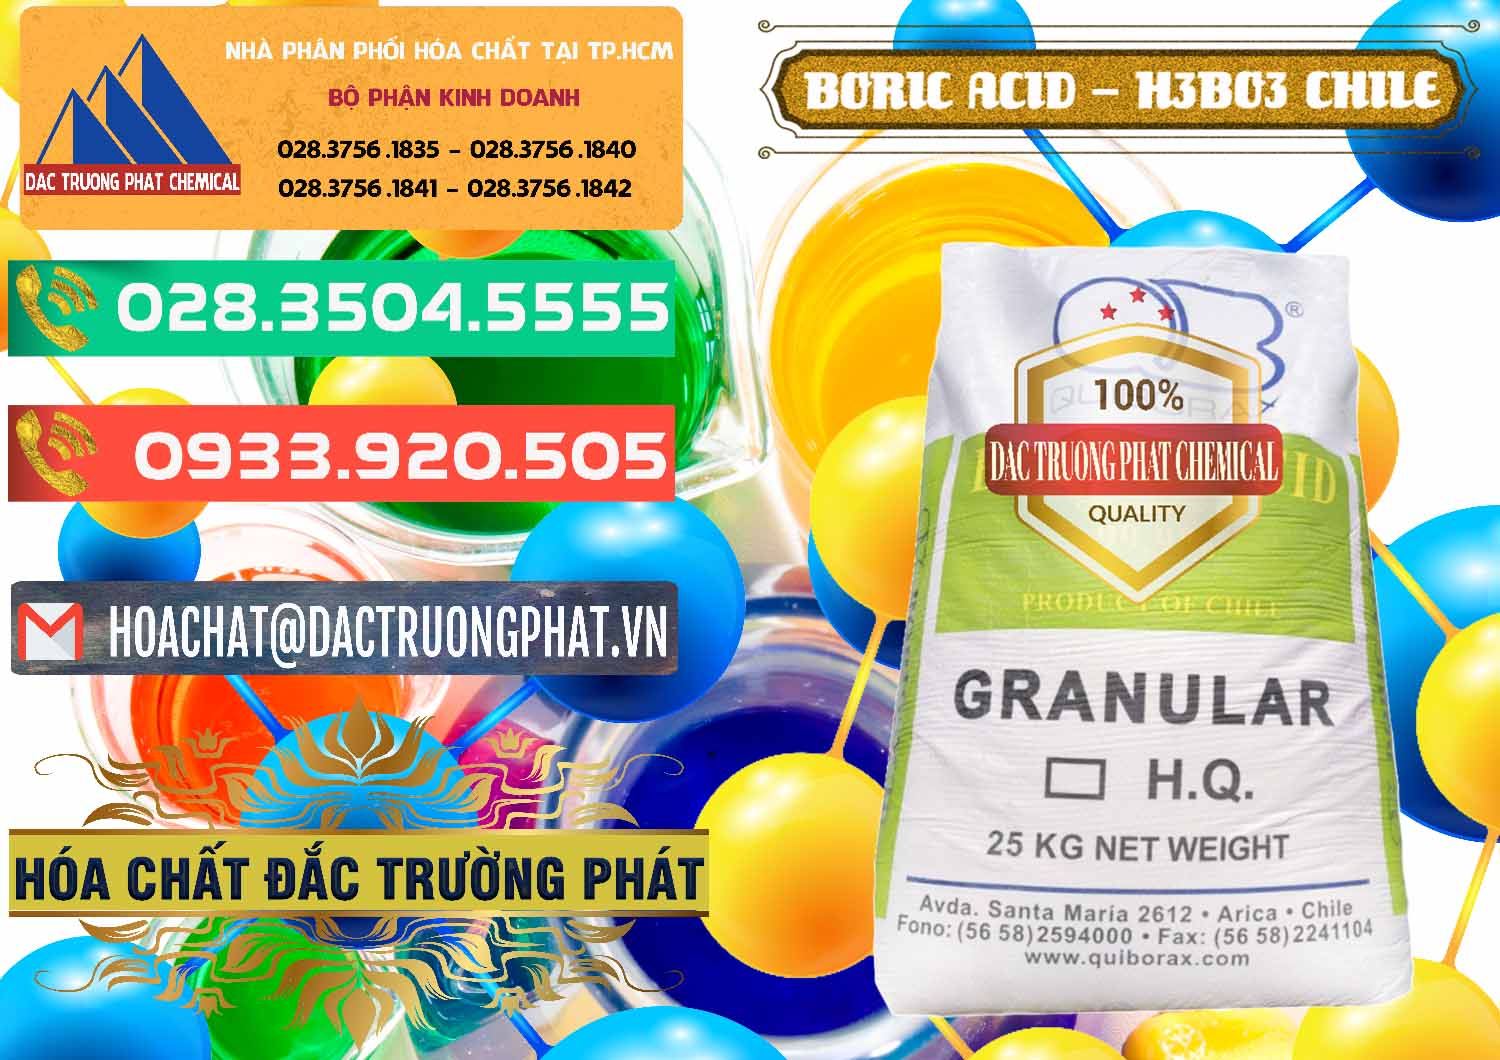 Đơn vị chuyên cung cấp - bán Acid Boric – Axit Boric H3BO3 99% Quiborax Chile - 0281 - Bán _ phân phối hóa chất tại TP.HCM - congtyhoachat.com.vn